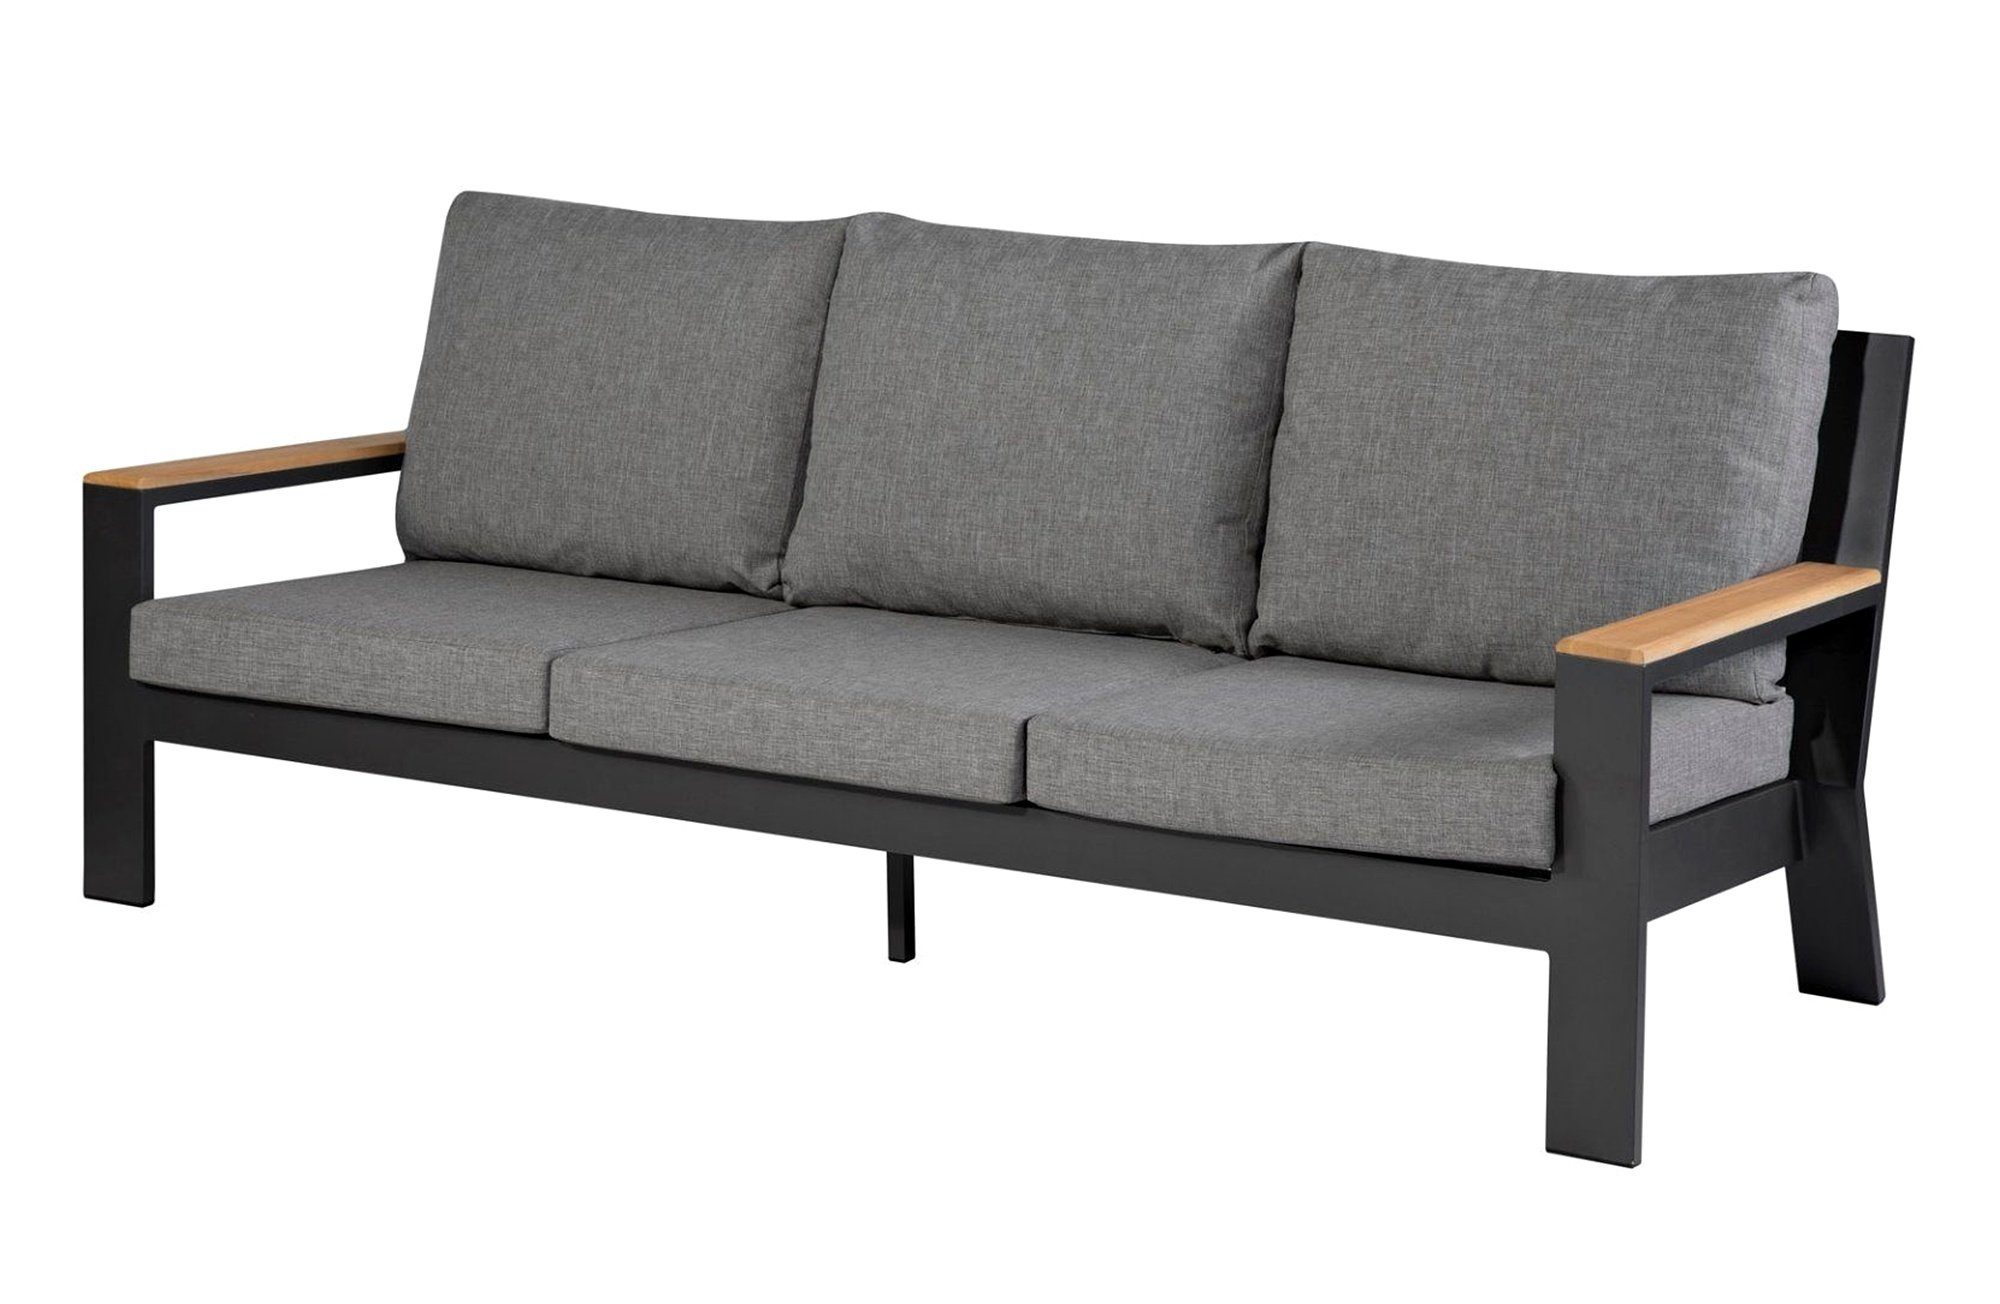 EXOTAN Gartenlounge-Set Lounge Sofa Valerie 3 Sitzer - Aluminium  Anthracite, mit 2 Armlehnen